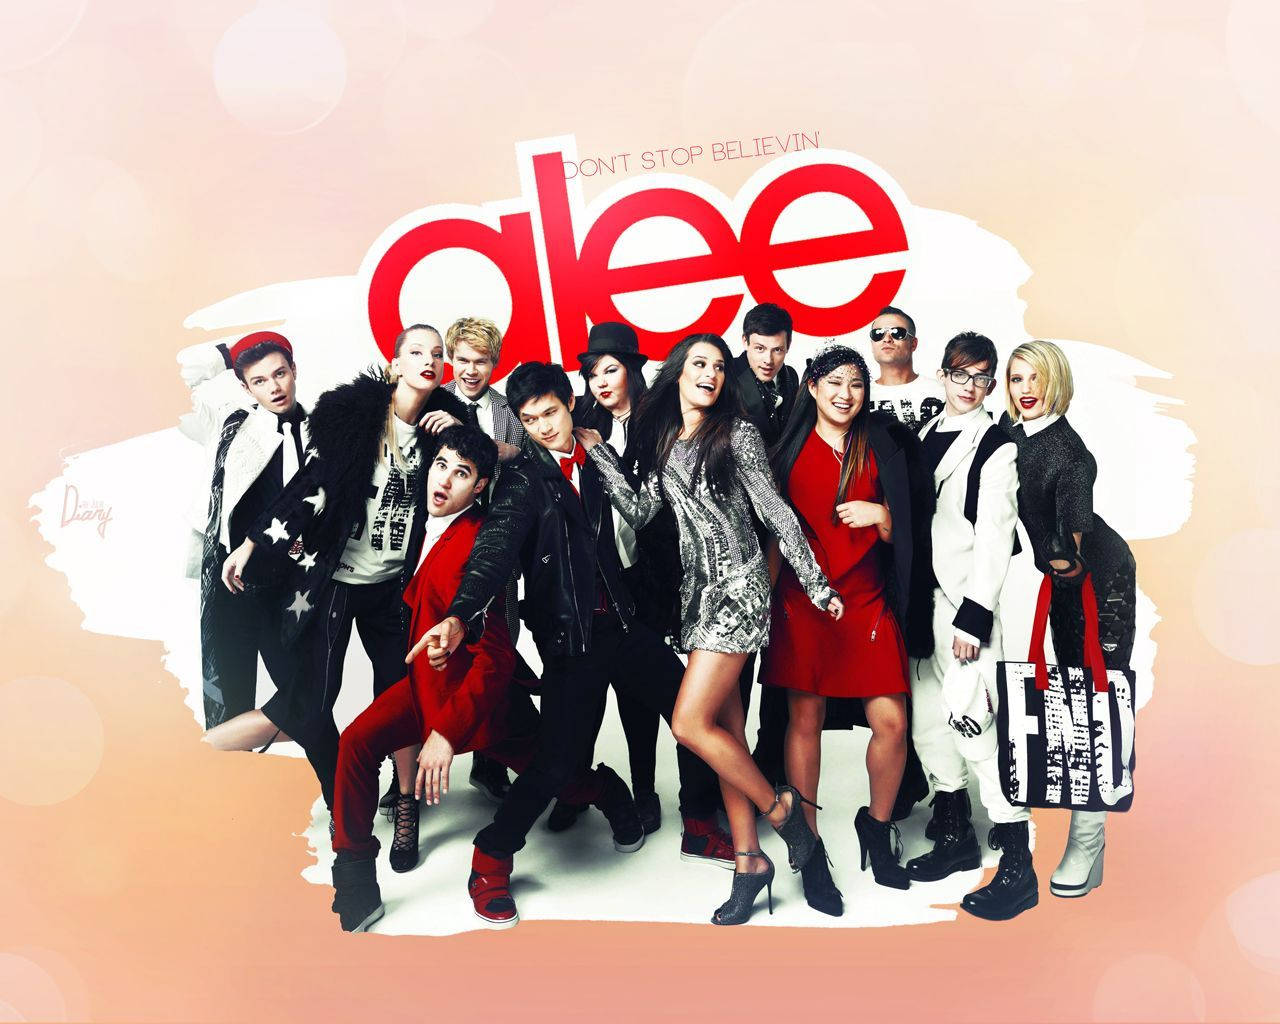 Miembrosdel Elenco De Glee En Una Ilustración De Vogue Fondo de pantalla